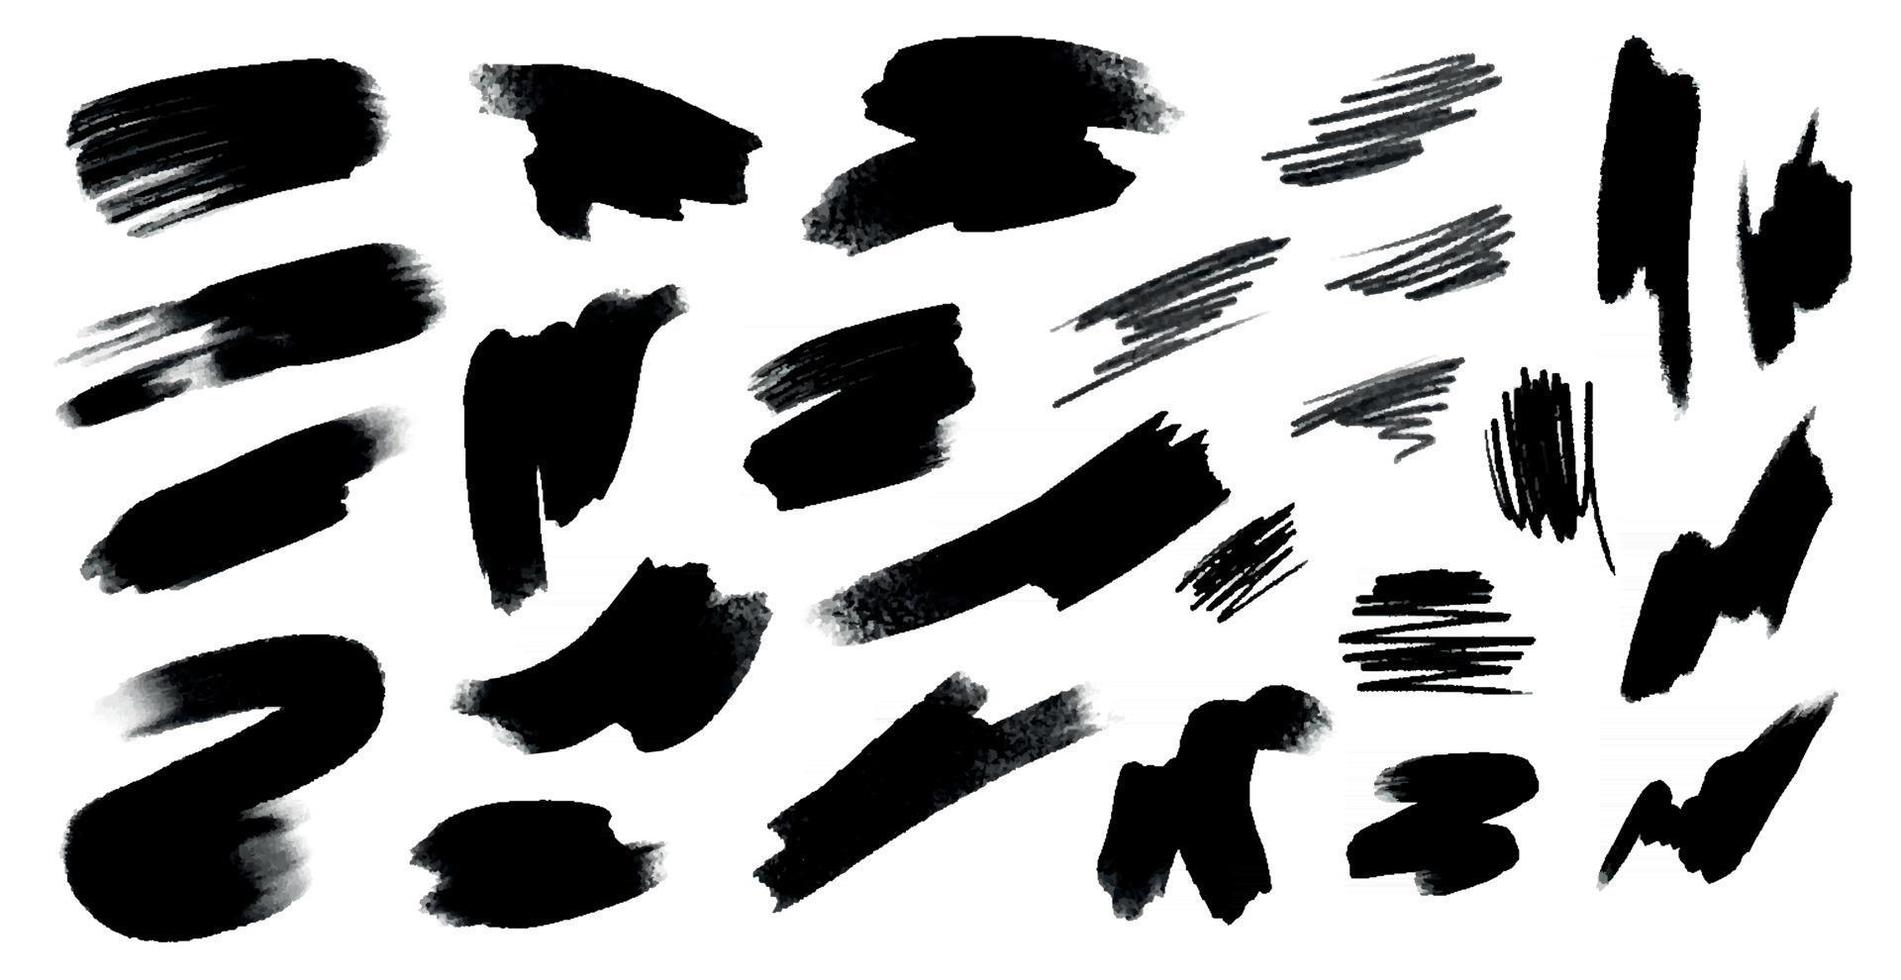 différents traits de peinture noire sur fond blanc - vector